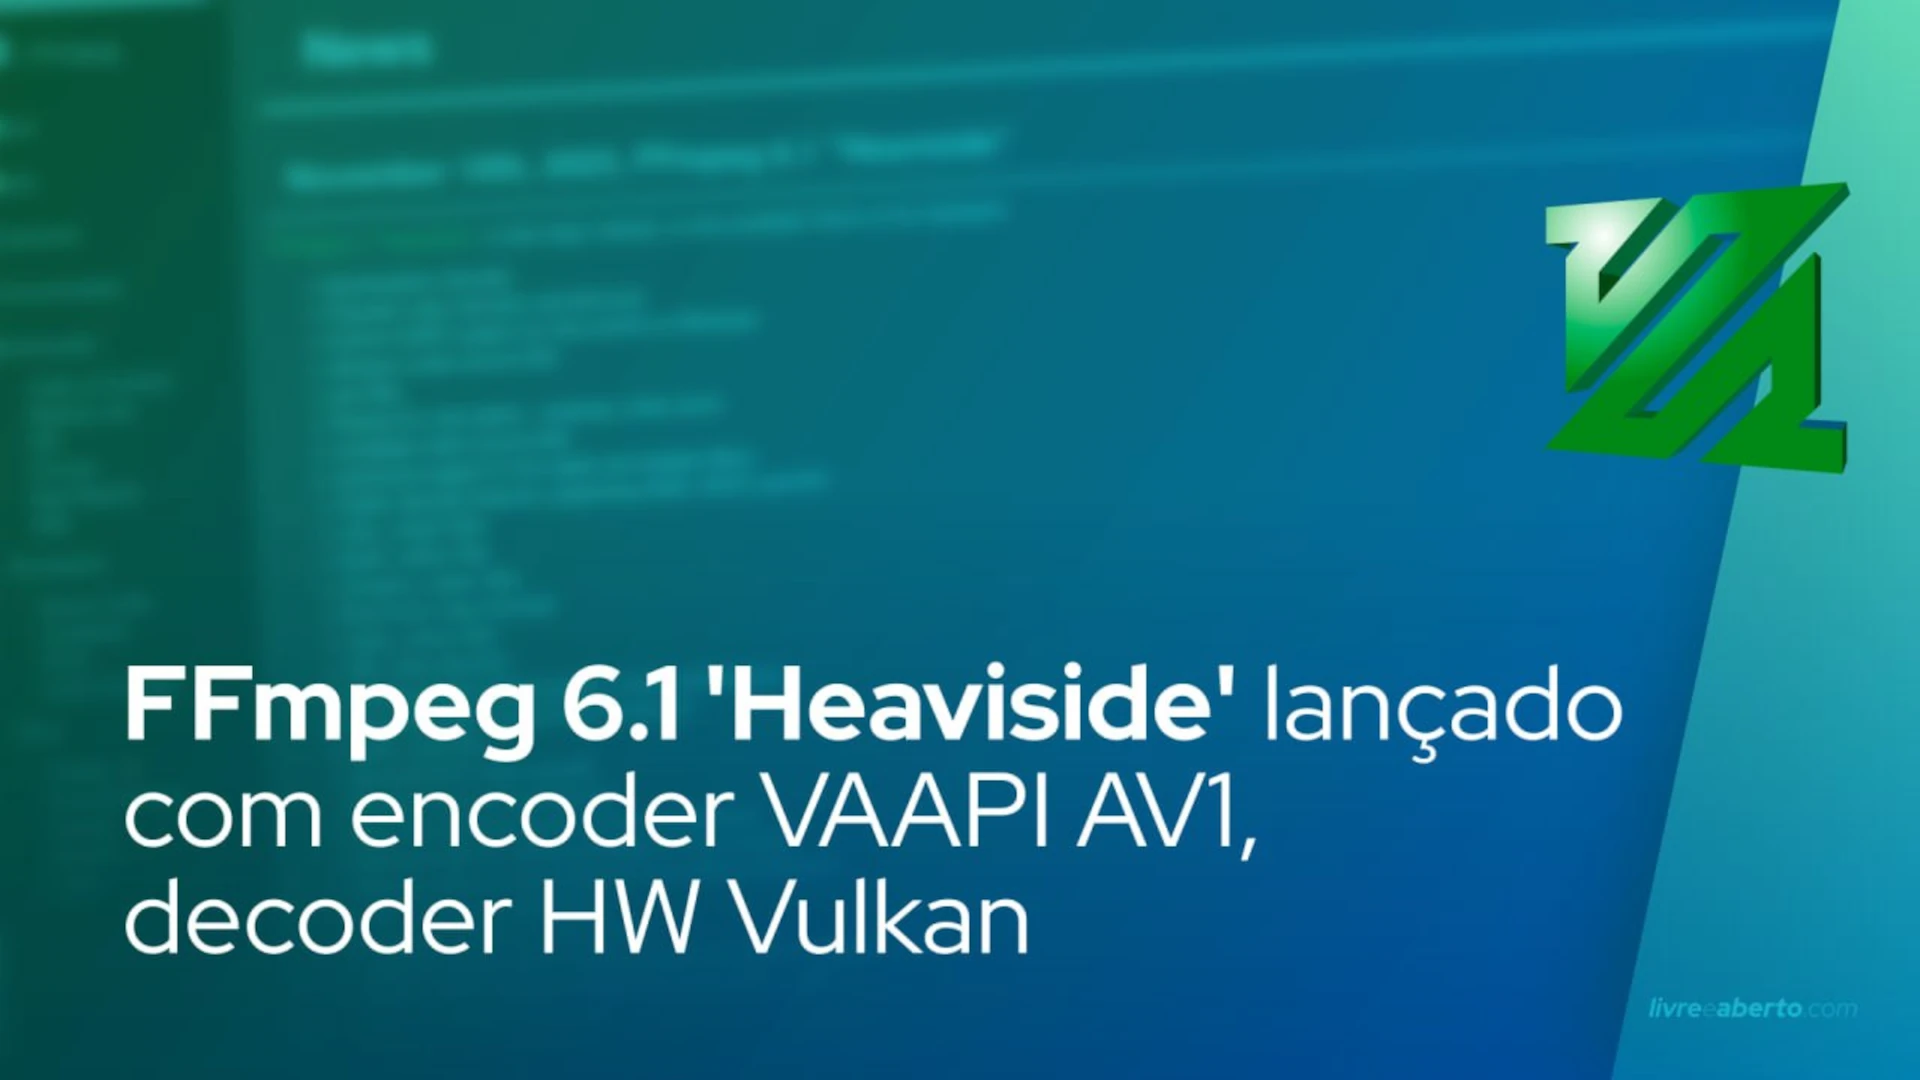 FFmpeg 6.1 'Heaviside' lançado com encoder VAAPI AV1, decoder HW Vulkan